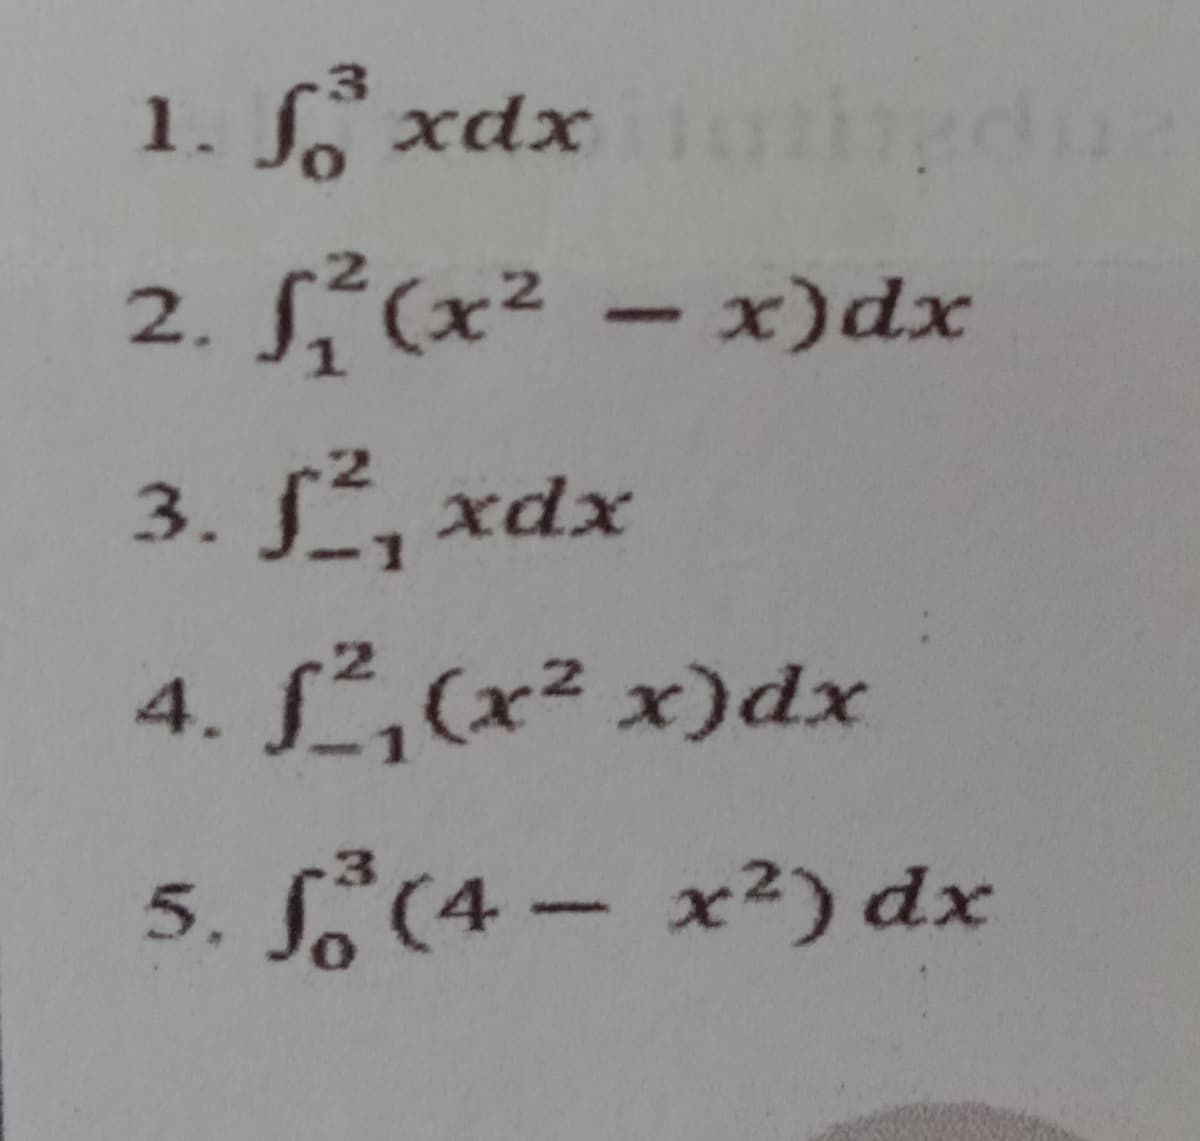 fo xdxungdua
1.
2.
1²(x²-x)dx
3. J, xdx
4. f²₁(x² x)dx
5. f (4- x²) dx